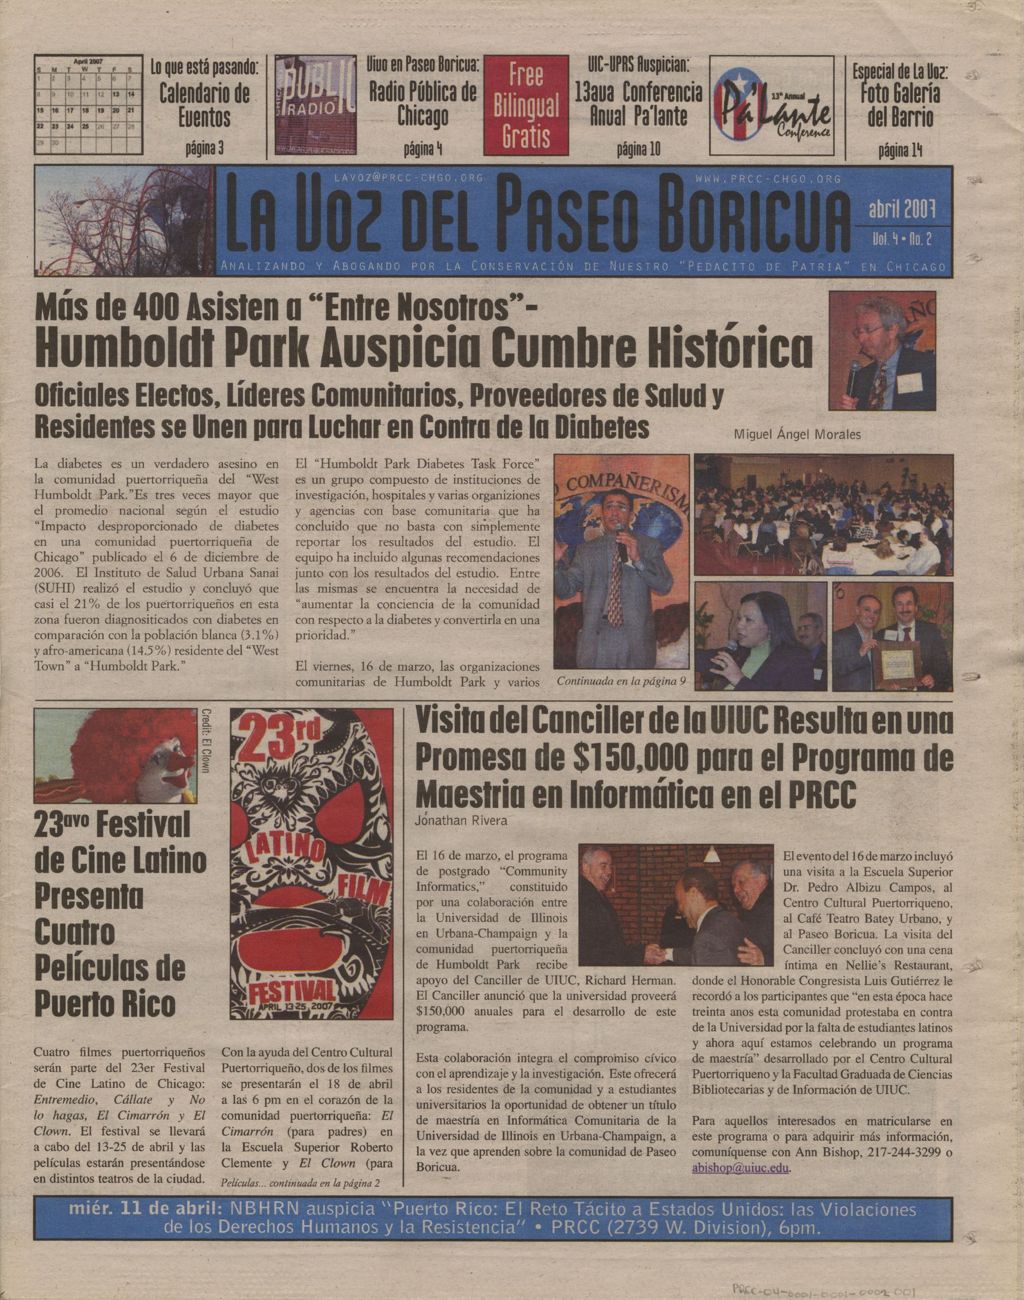 La Voz del Paseo Boricua; April 2007; vol. 4, no. 2 (Spanish and English covers)